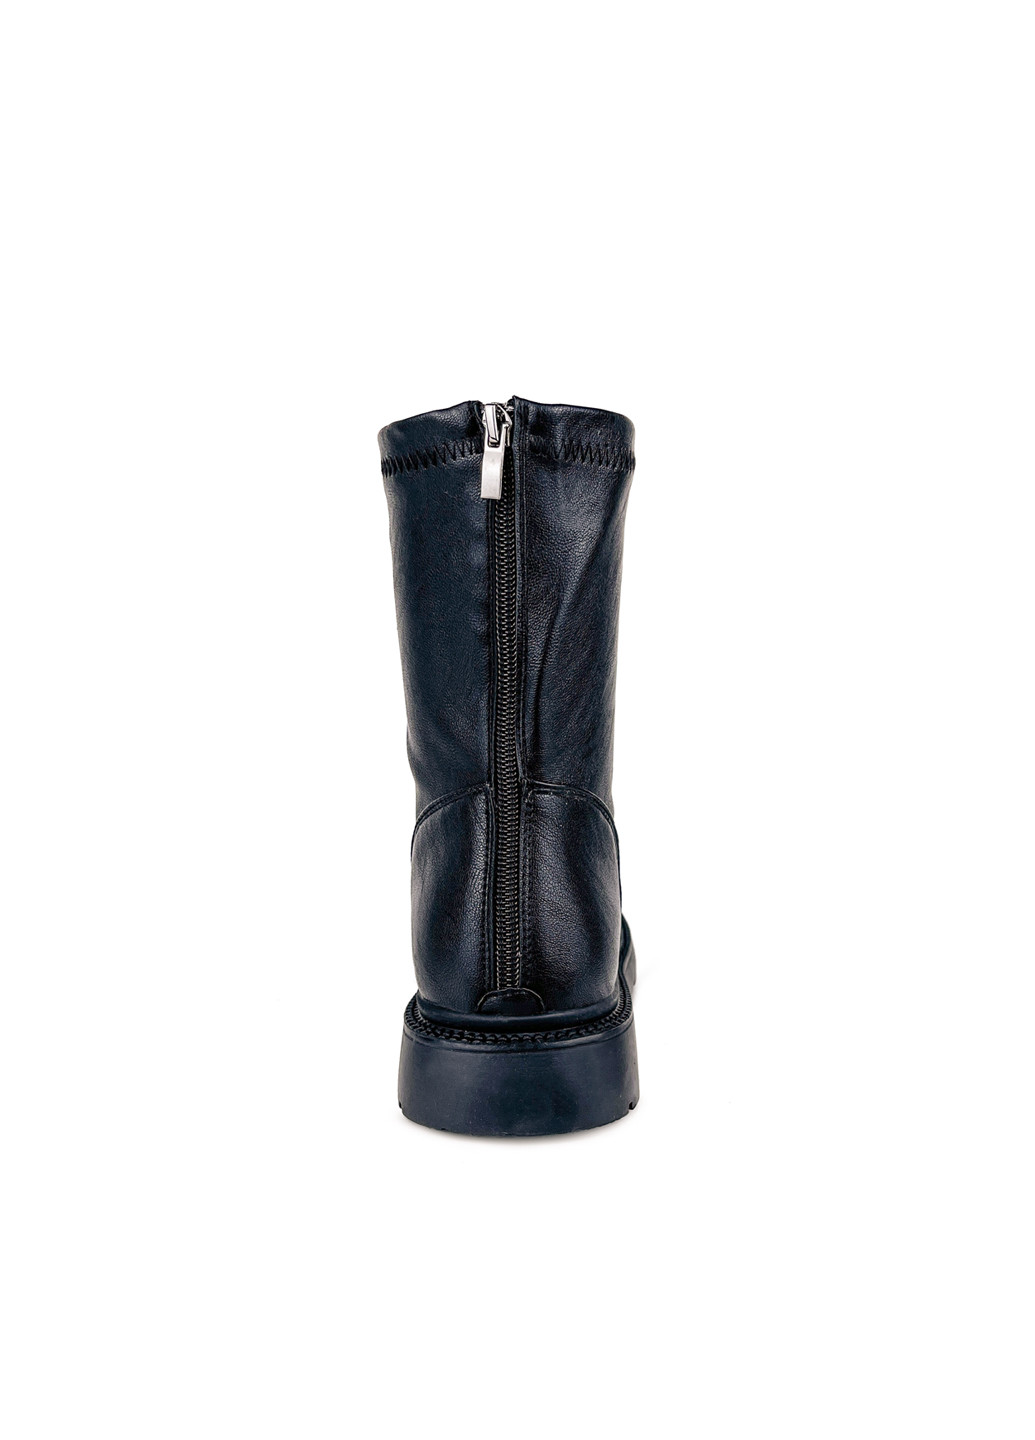 Осенние высокие женские ботинки на шнурках черные эко кожа стрейчевые Fashion из искусственной кожи